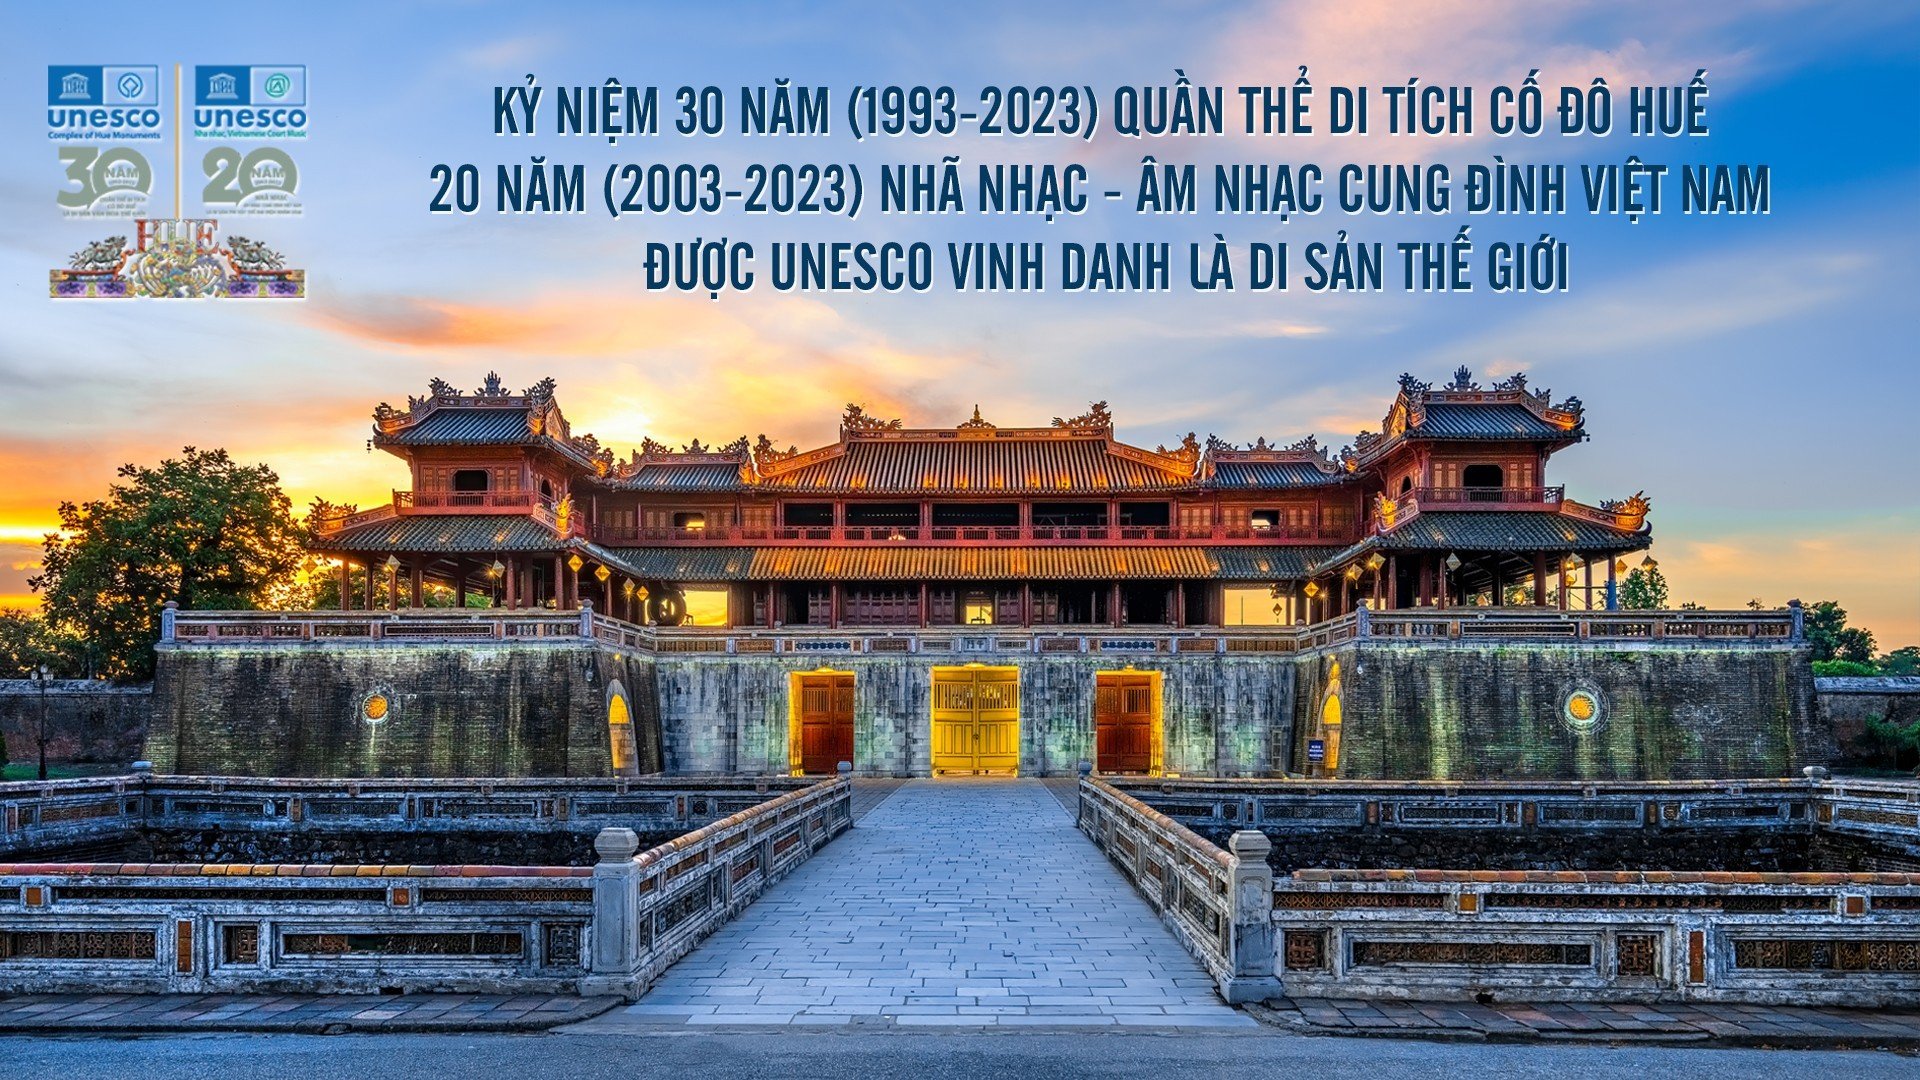 Chương trình Kỷ niệm 30 năm Quần thể Di tích Cố đô Huế và 20 năm Nhã nhạc - Âm nhạc Cung đình Việt Nam được UNESCO vinh danh là Di sản thế giới